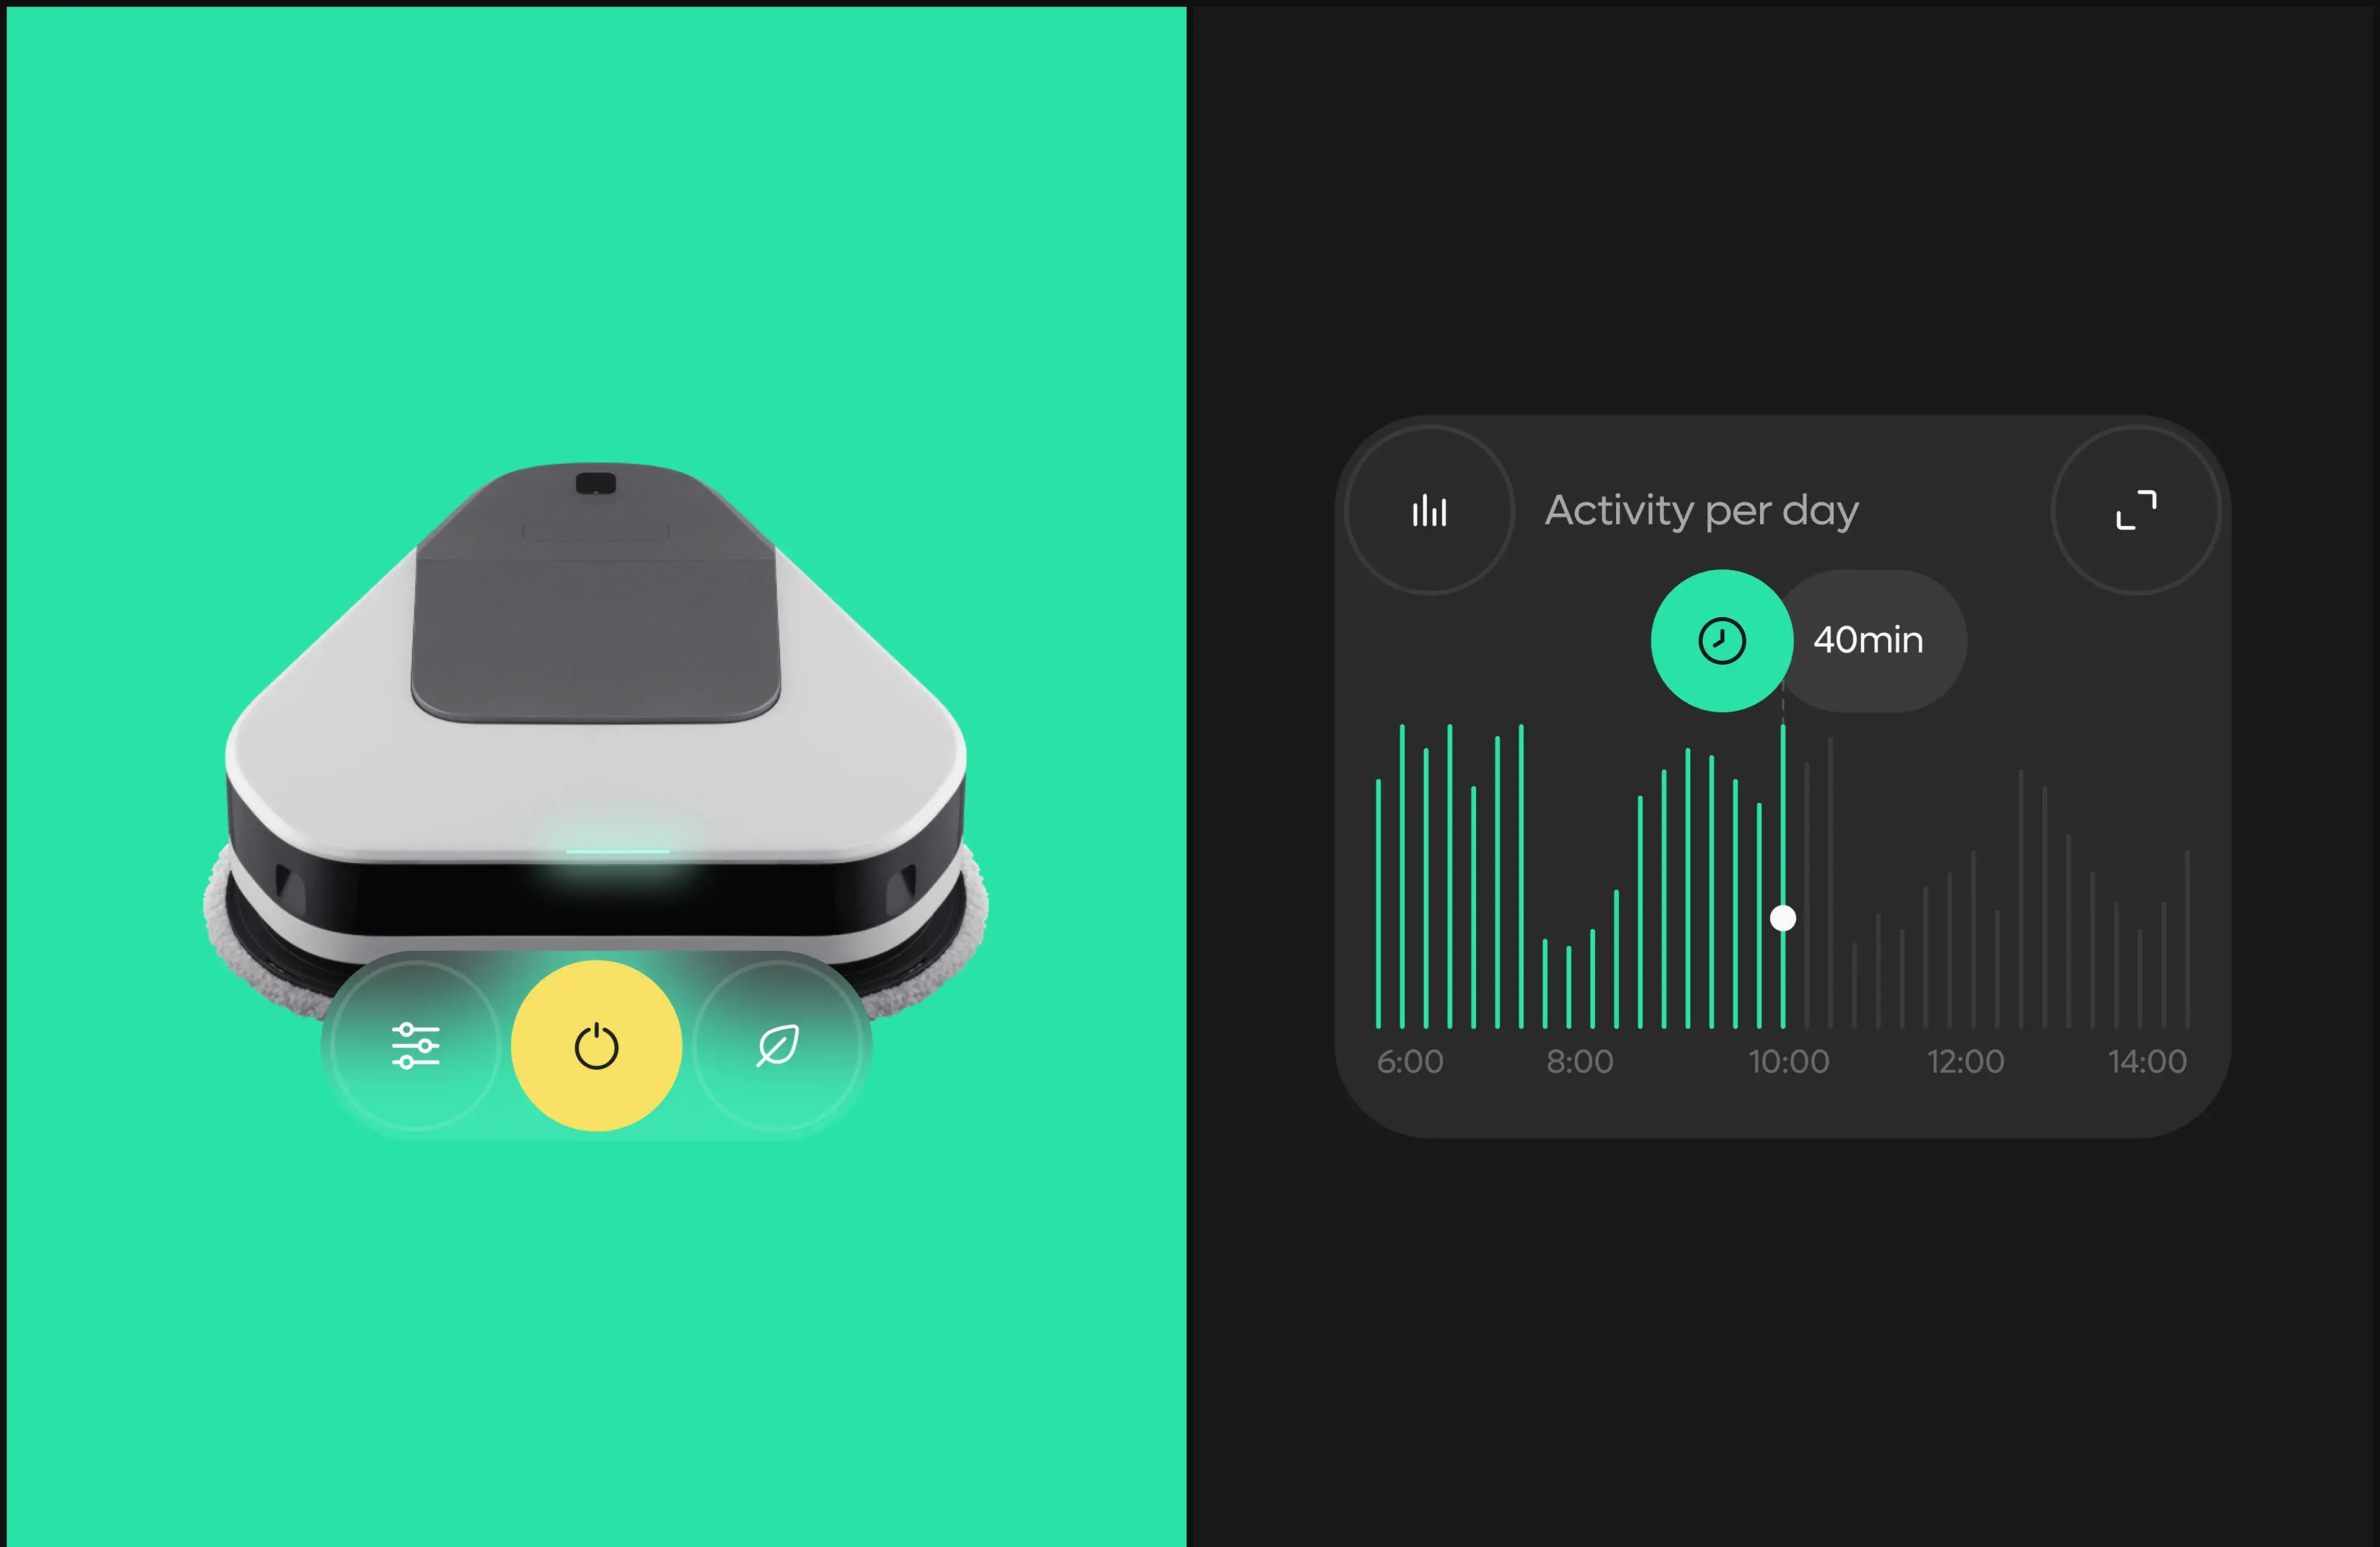 Everybot Cleaner - Mobile App & UX UI Design - App’s